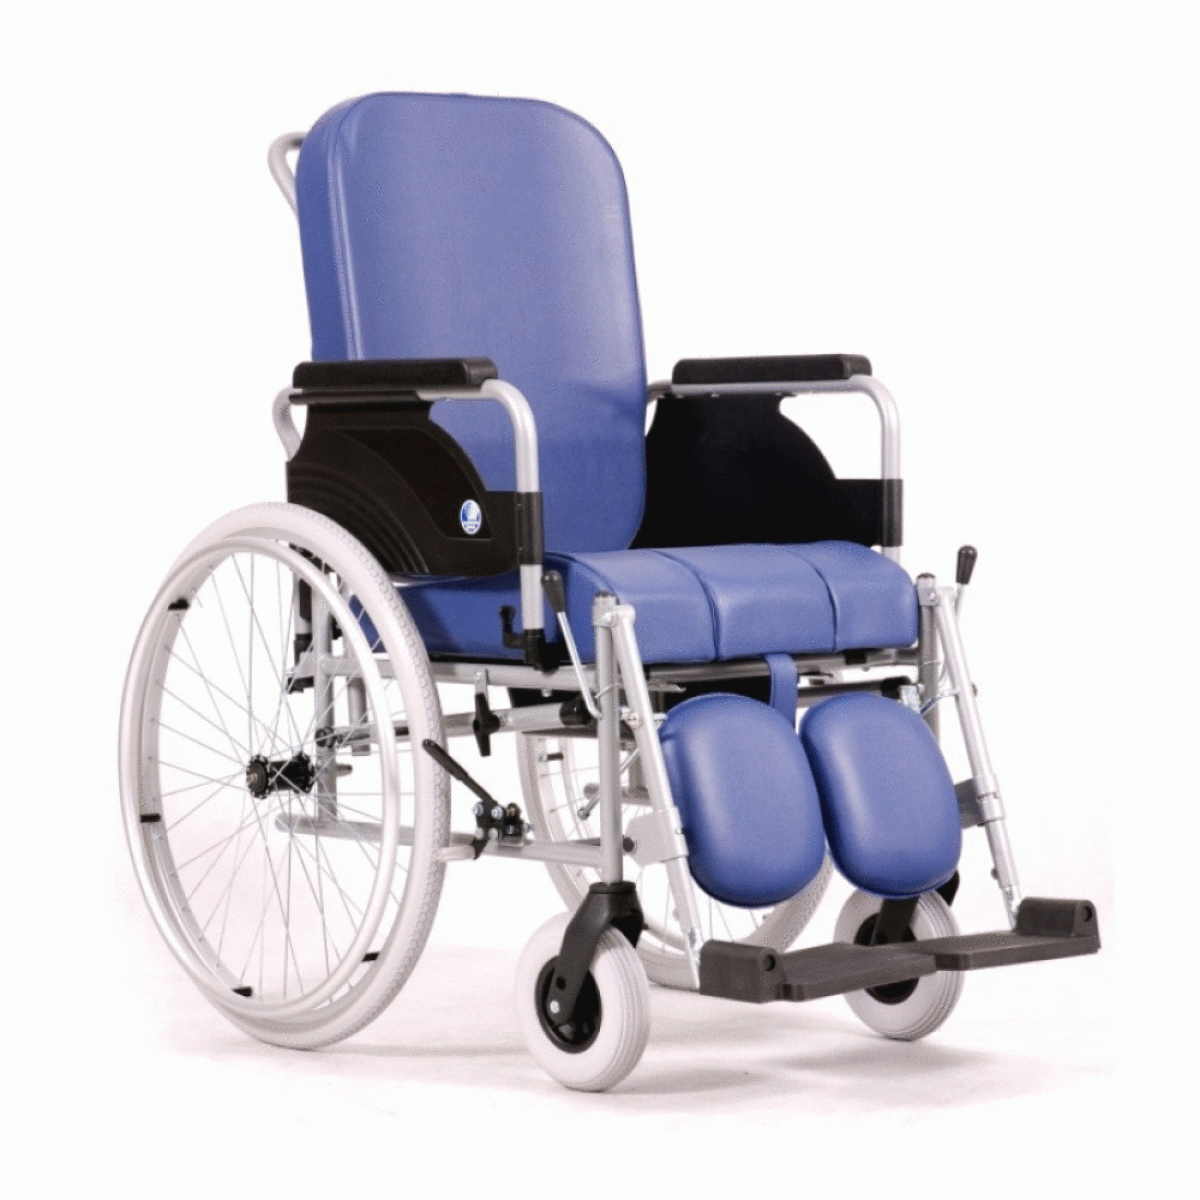 Инвалидное кресло на авито. Кресло коляска Vermeiren 9300. Кресло-коляска с санитарным оснащением Vermeiren 9303. Кресло-стул с санитарным оснащением Vermeiren 9300. Кресло-коляска Barry r1.